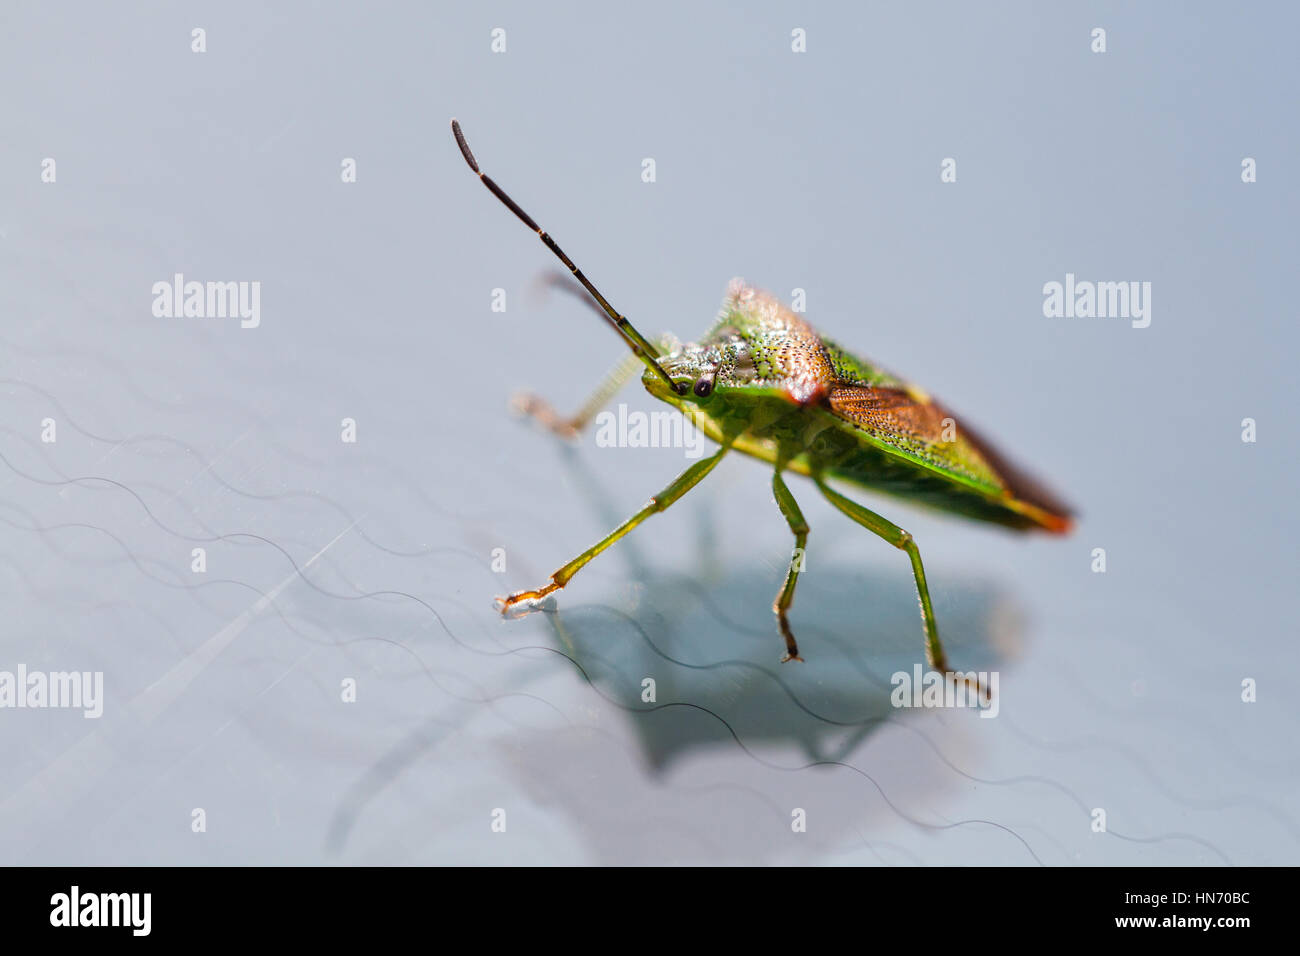 Un close up macro sho ofA scudo verde bug insetto depositatesi su di un parabrezza di automobile Foto Stock